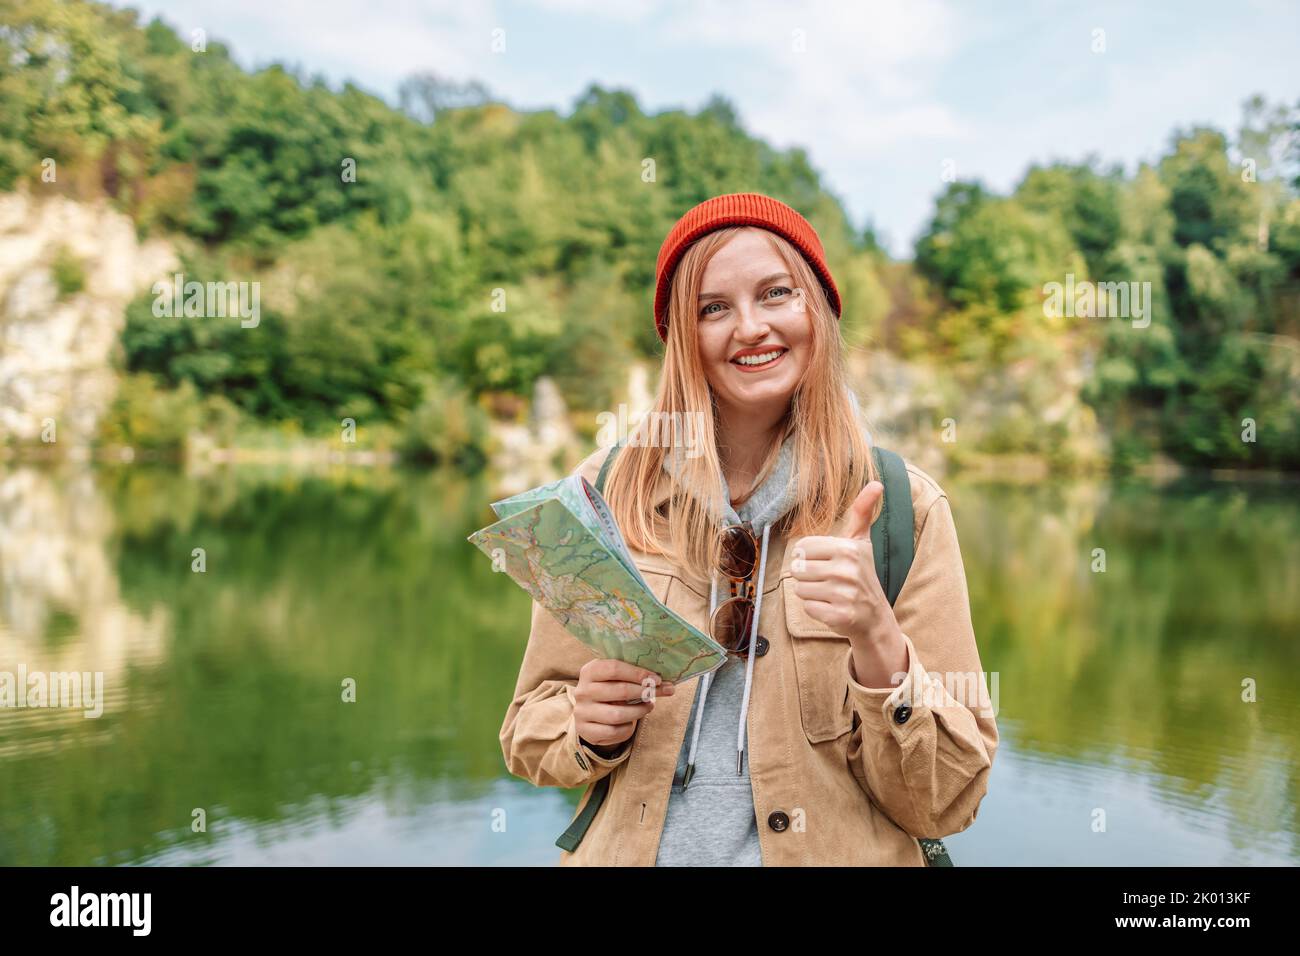 Una donna felice in viaggio con spettacoli come lo zaino, guardando la fotocamera e la mappa topografica nelle foreste verdi. Avventura escursionistica vacanza estiva concetto. Foto Stock